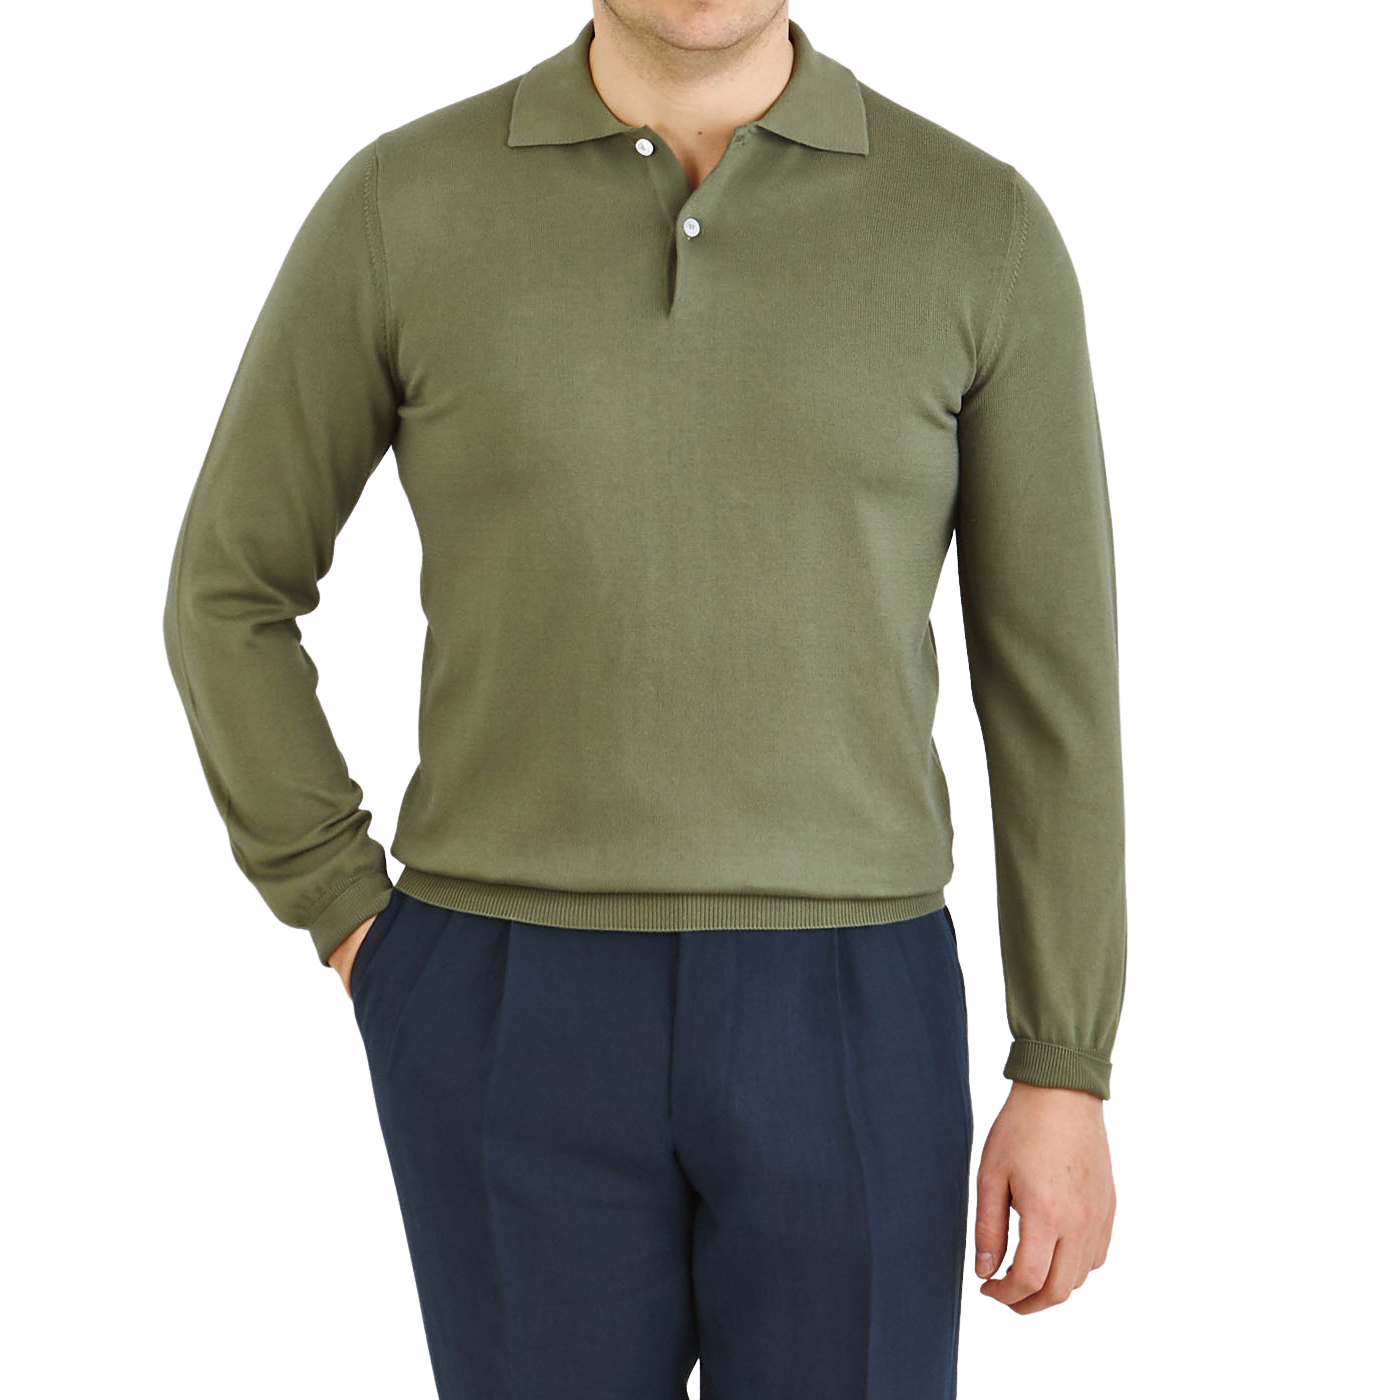 Mauro Ottaviani  Grass Green Supima Cotton LS Polo Shirt – Baltzar